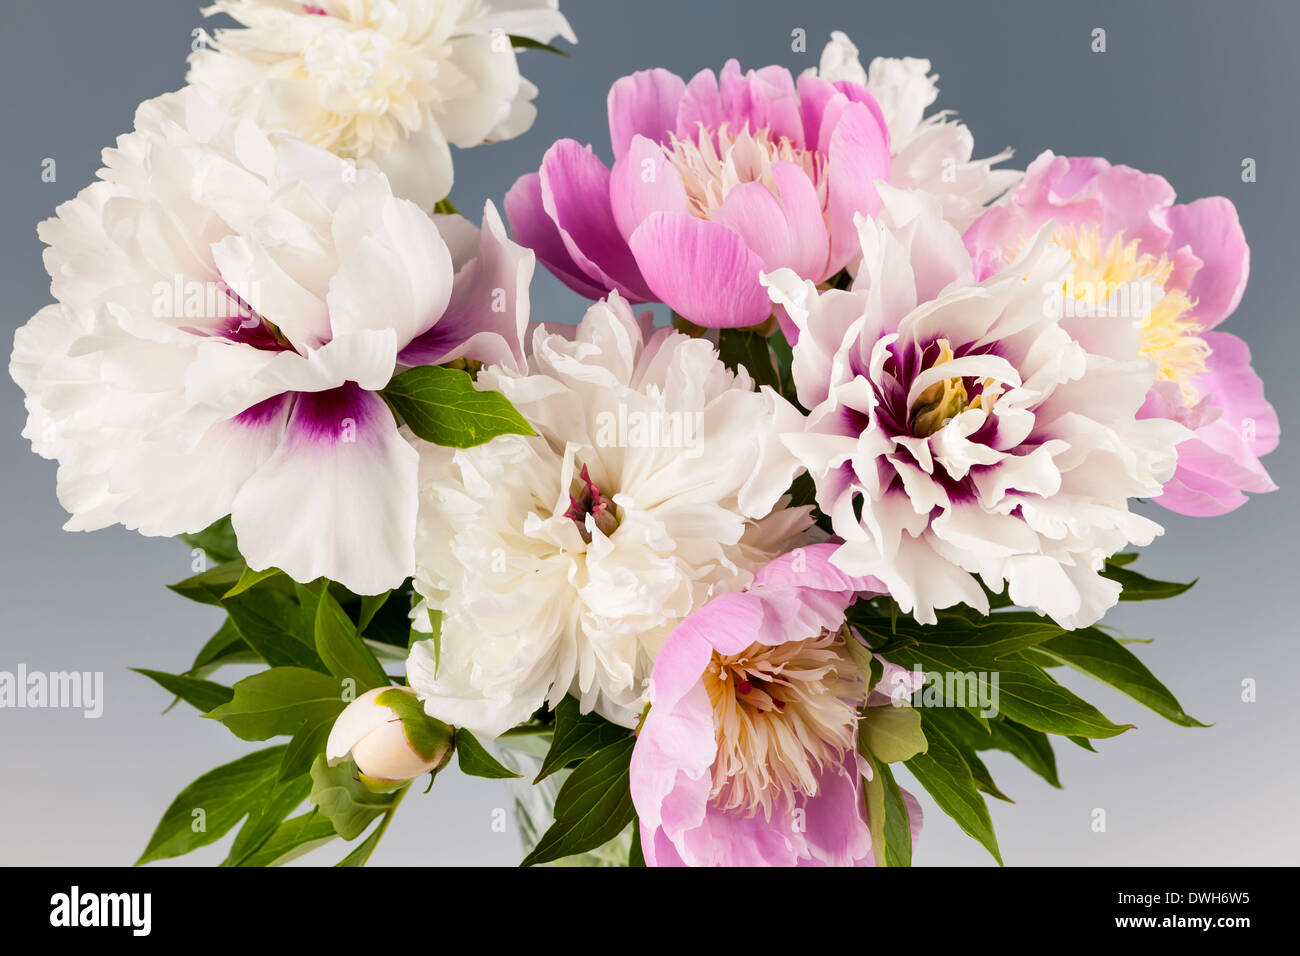 Bouquet de rosas y flores de peonía blanca sobre fondo gris, Foto de estudio Foto de stock